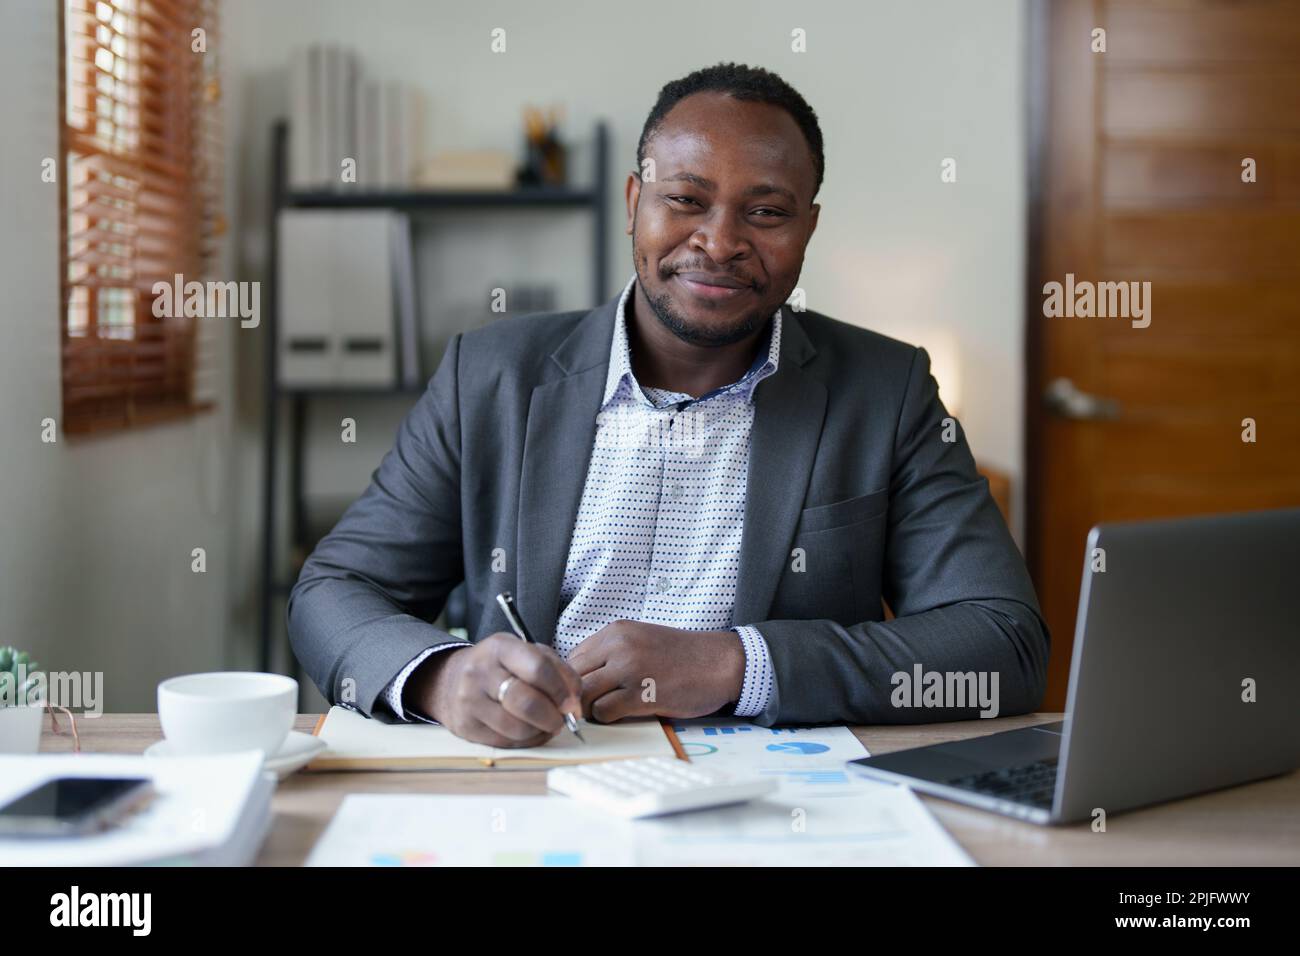 Homme d'âge moyen américain africain utilisant un ordinateur portable avec planification de travail sur les documents financiers, la fiscalité, les échanges, la comptabilité et conseiller financier Banque D'Images